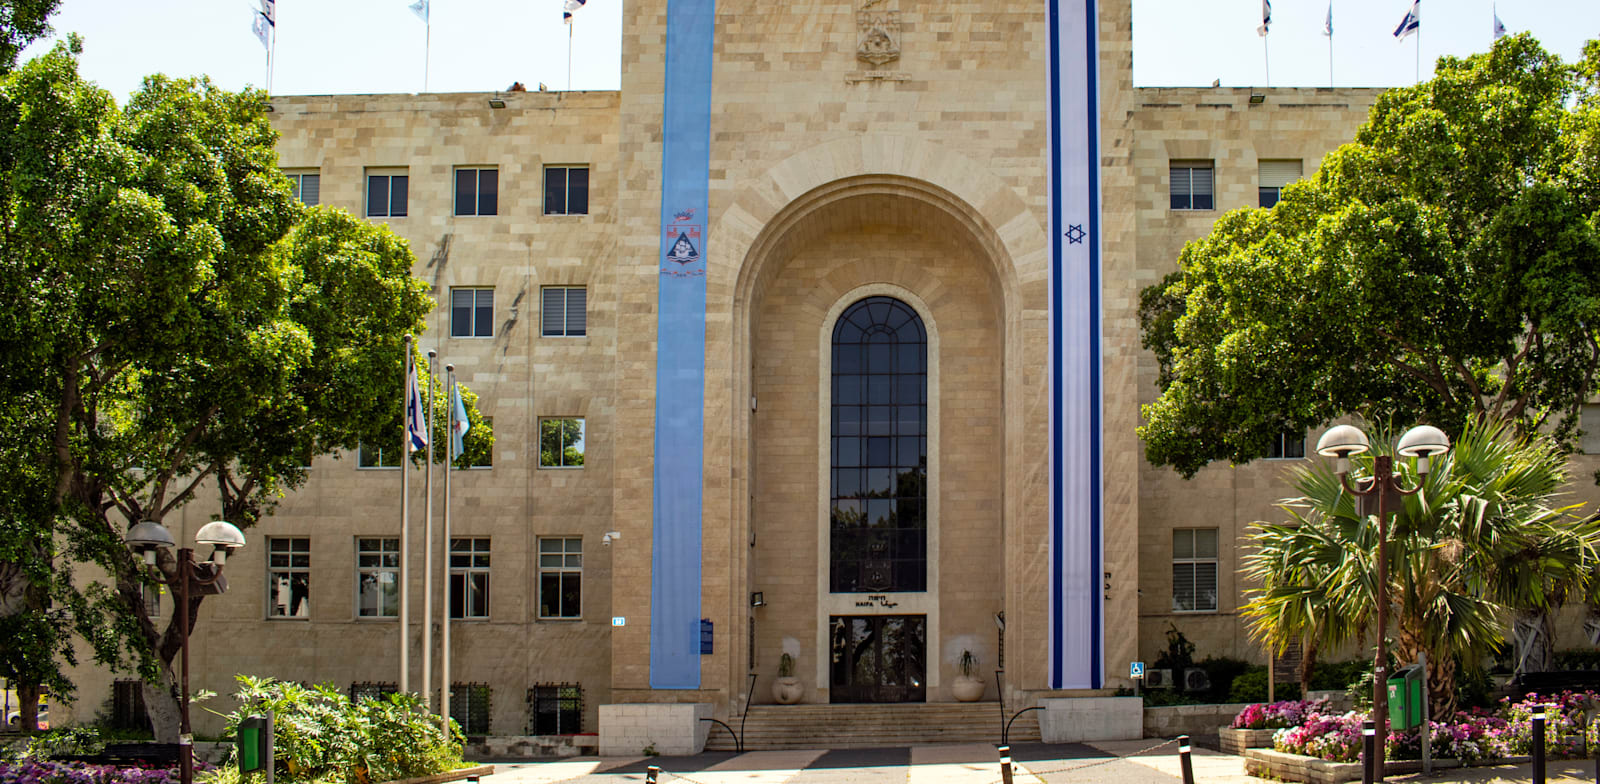 בניין עיריית חיפה. גם שם מבקשים להעלות את הארנונה / צילום: Shutterstock, Pioneerka888